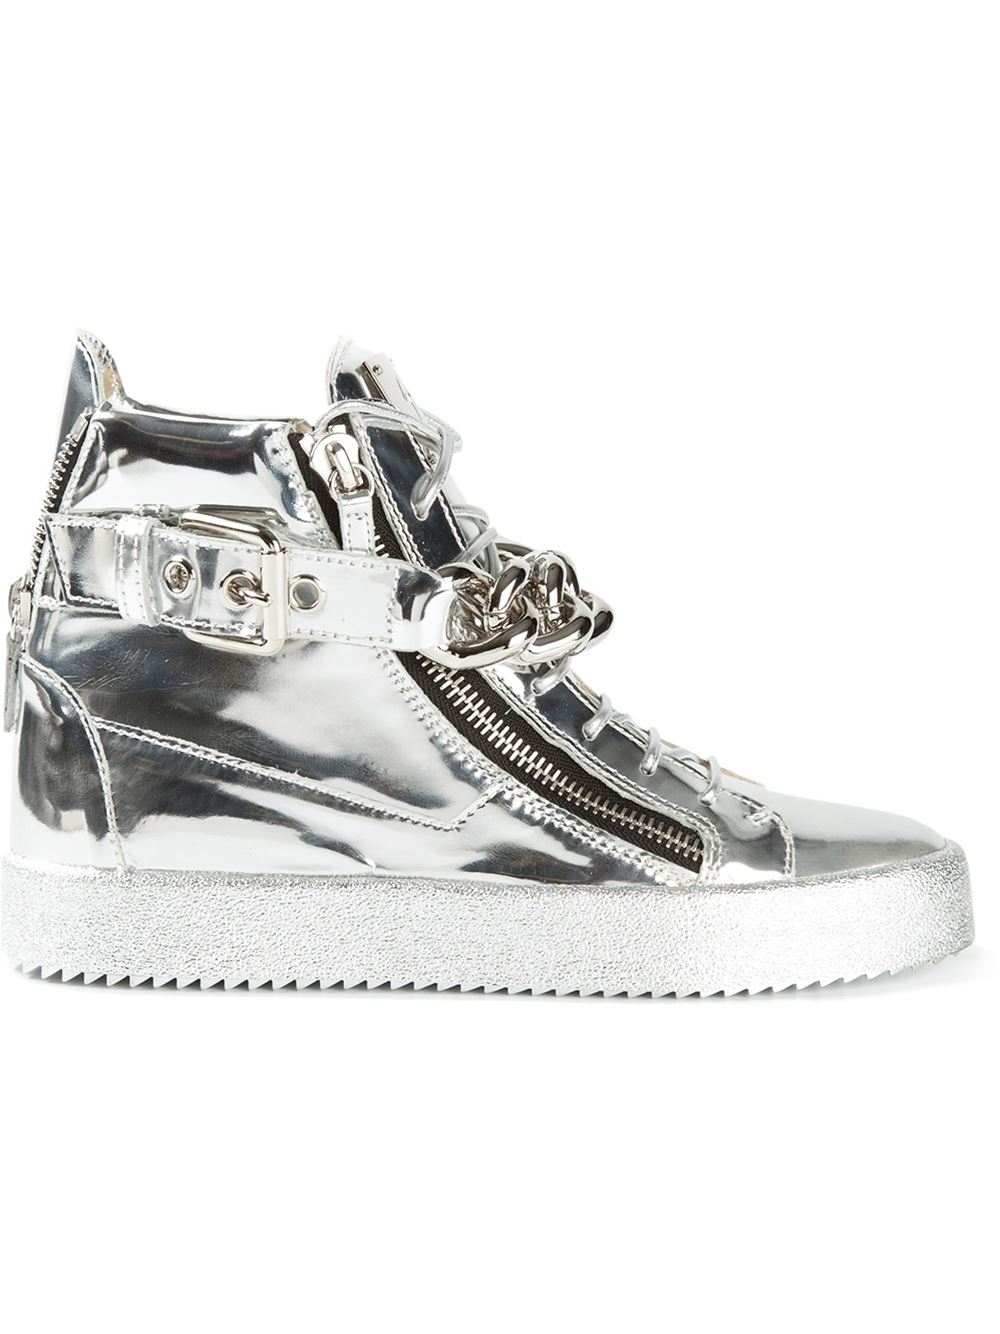 Giuseppe Zanotti Metallic Hi-Top Sneakers in Silver (metallic) | Lyst